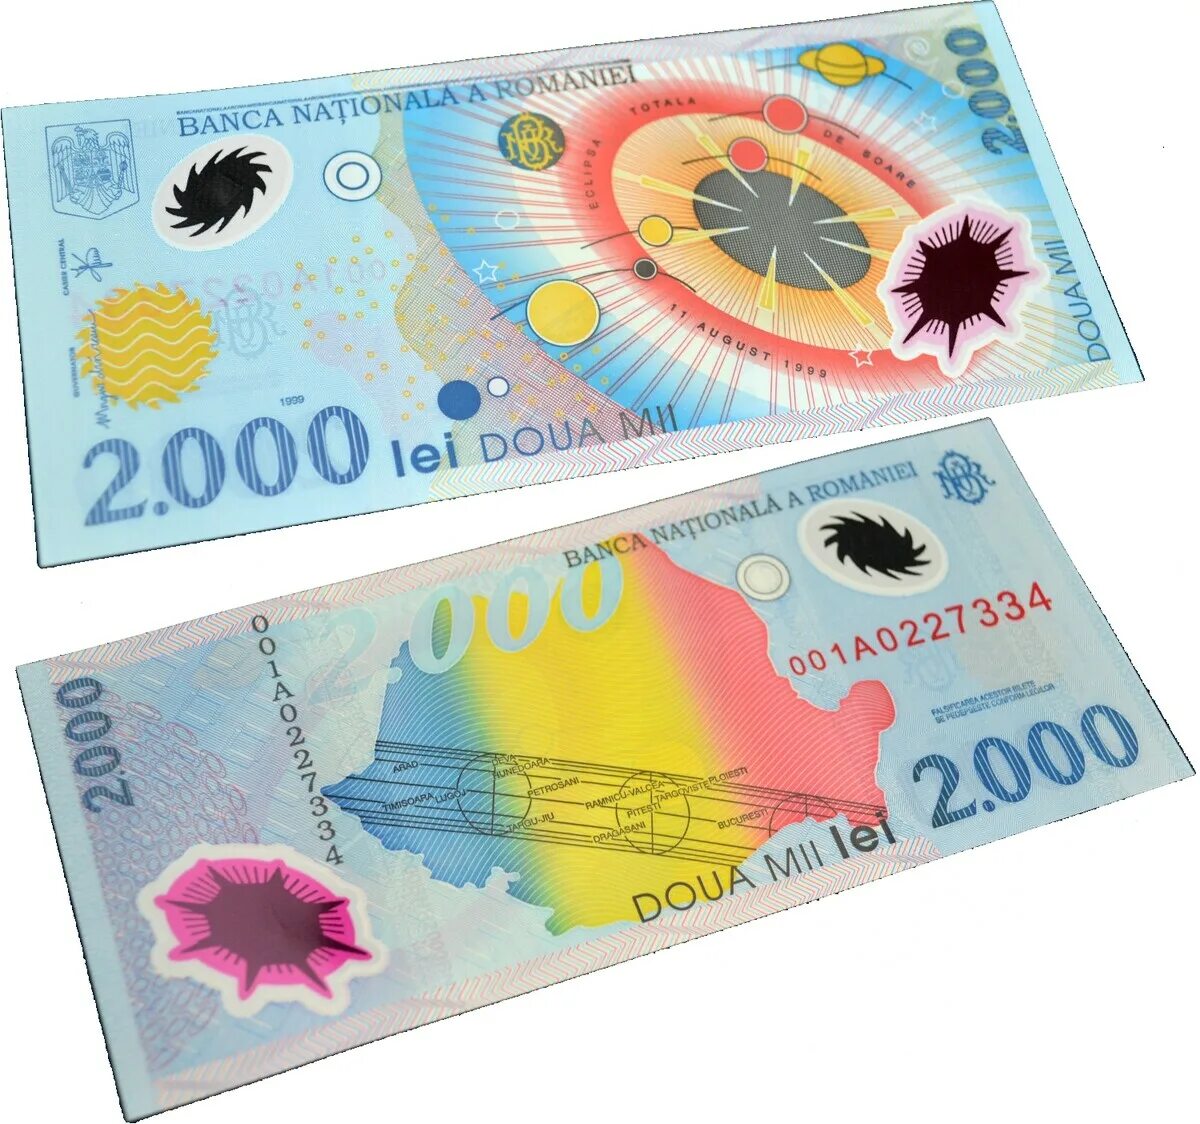 Какие страны выпустили банкноты. 2000 Лей 1999 Румыния банкнота. Румыния 2000 лей 1999. Румынская купюра 2000 лей. Румыния 2000 лей затмение.